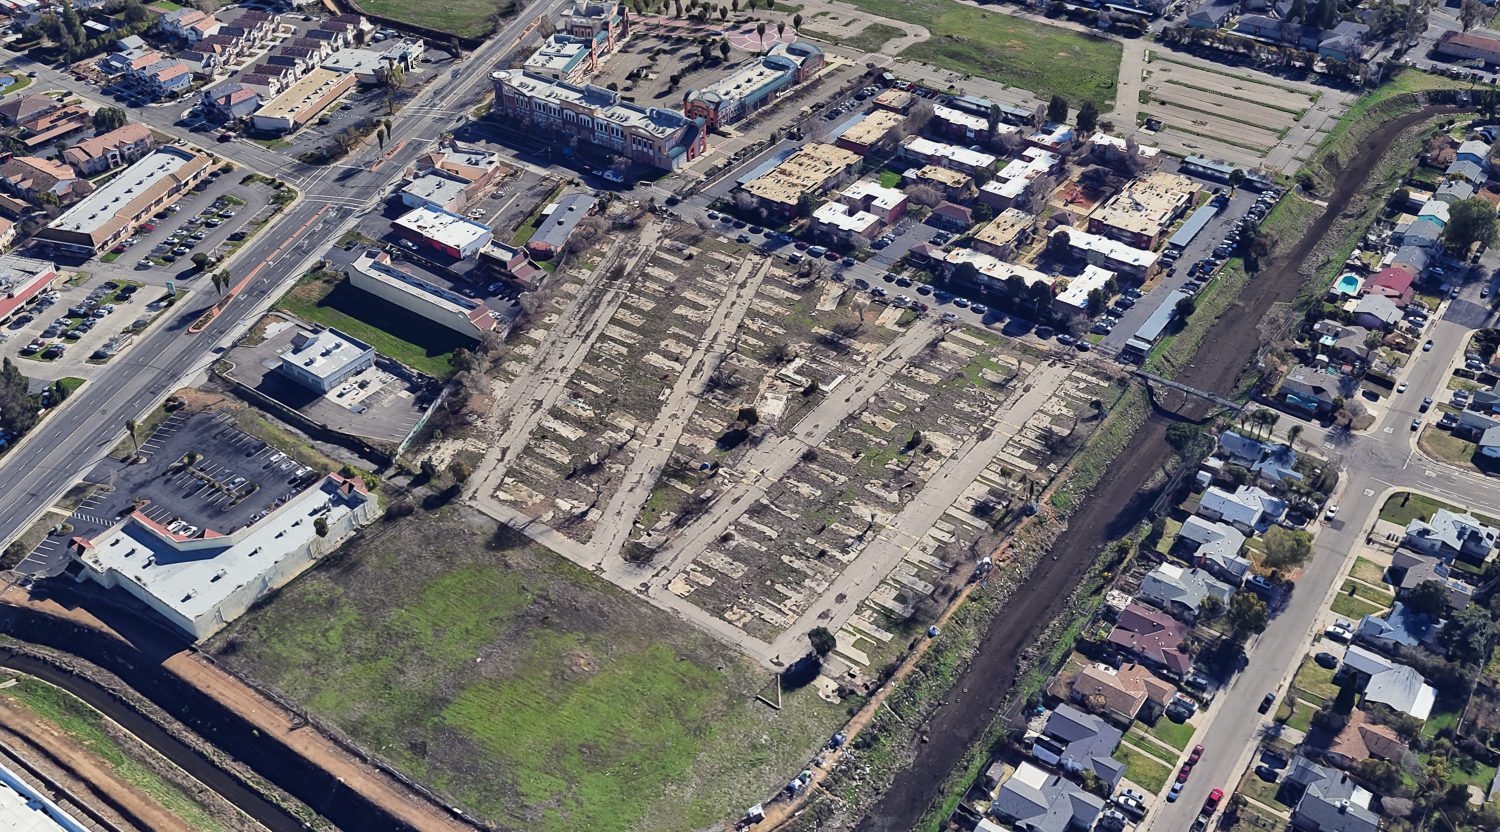 5955 Riza Avenue existing condition, image via Google Satellite